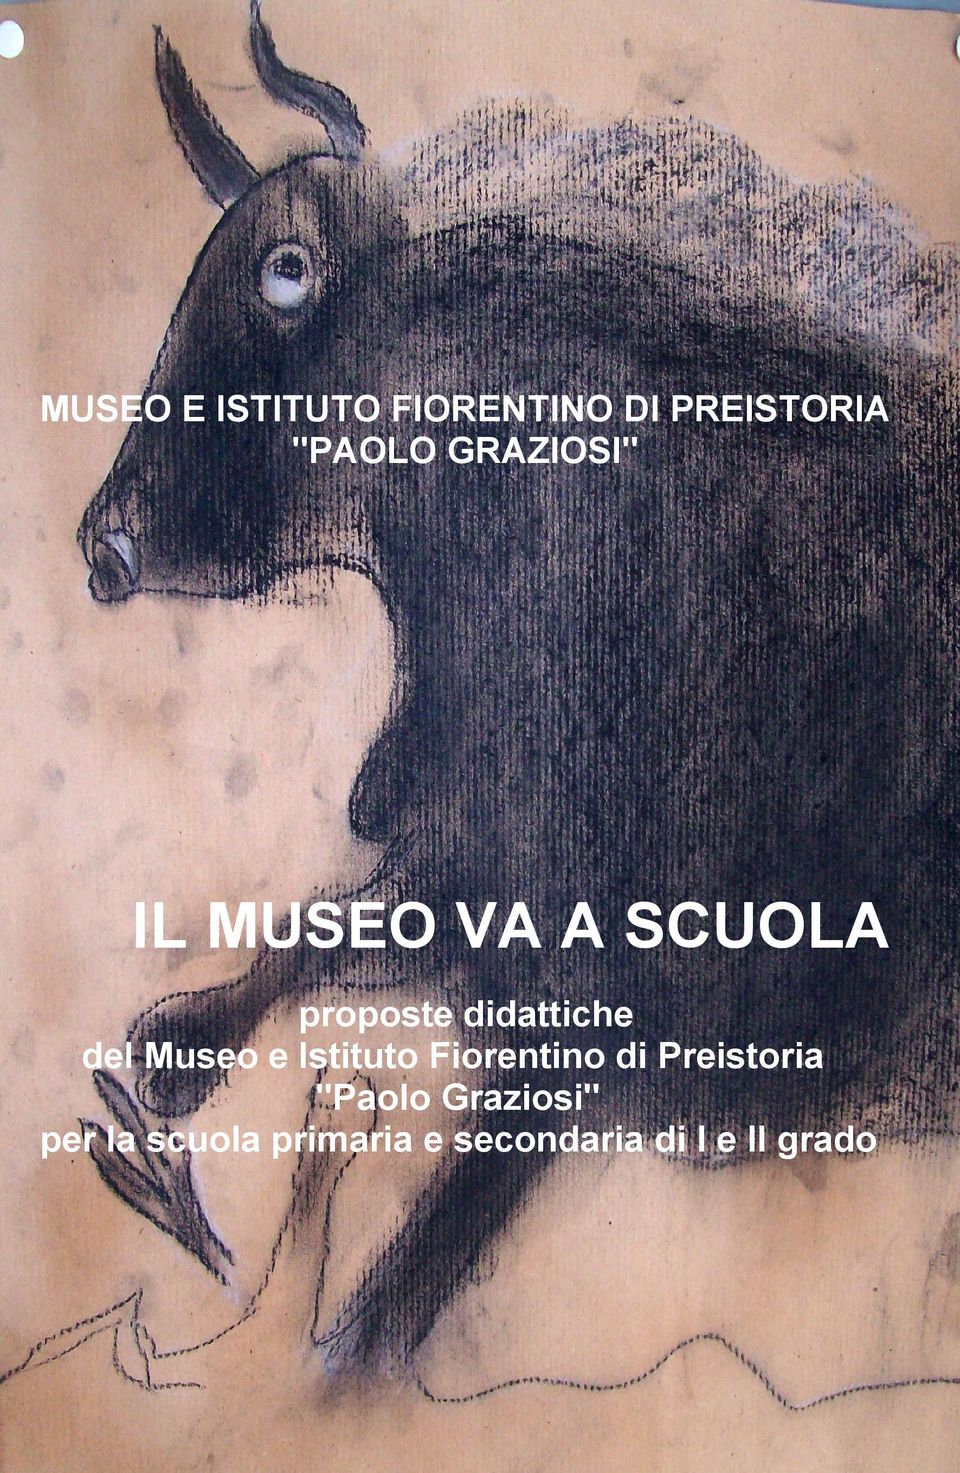 del Museo e Istituto Fiorentino di Preistoria "Paolo